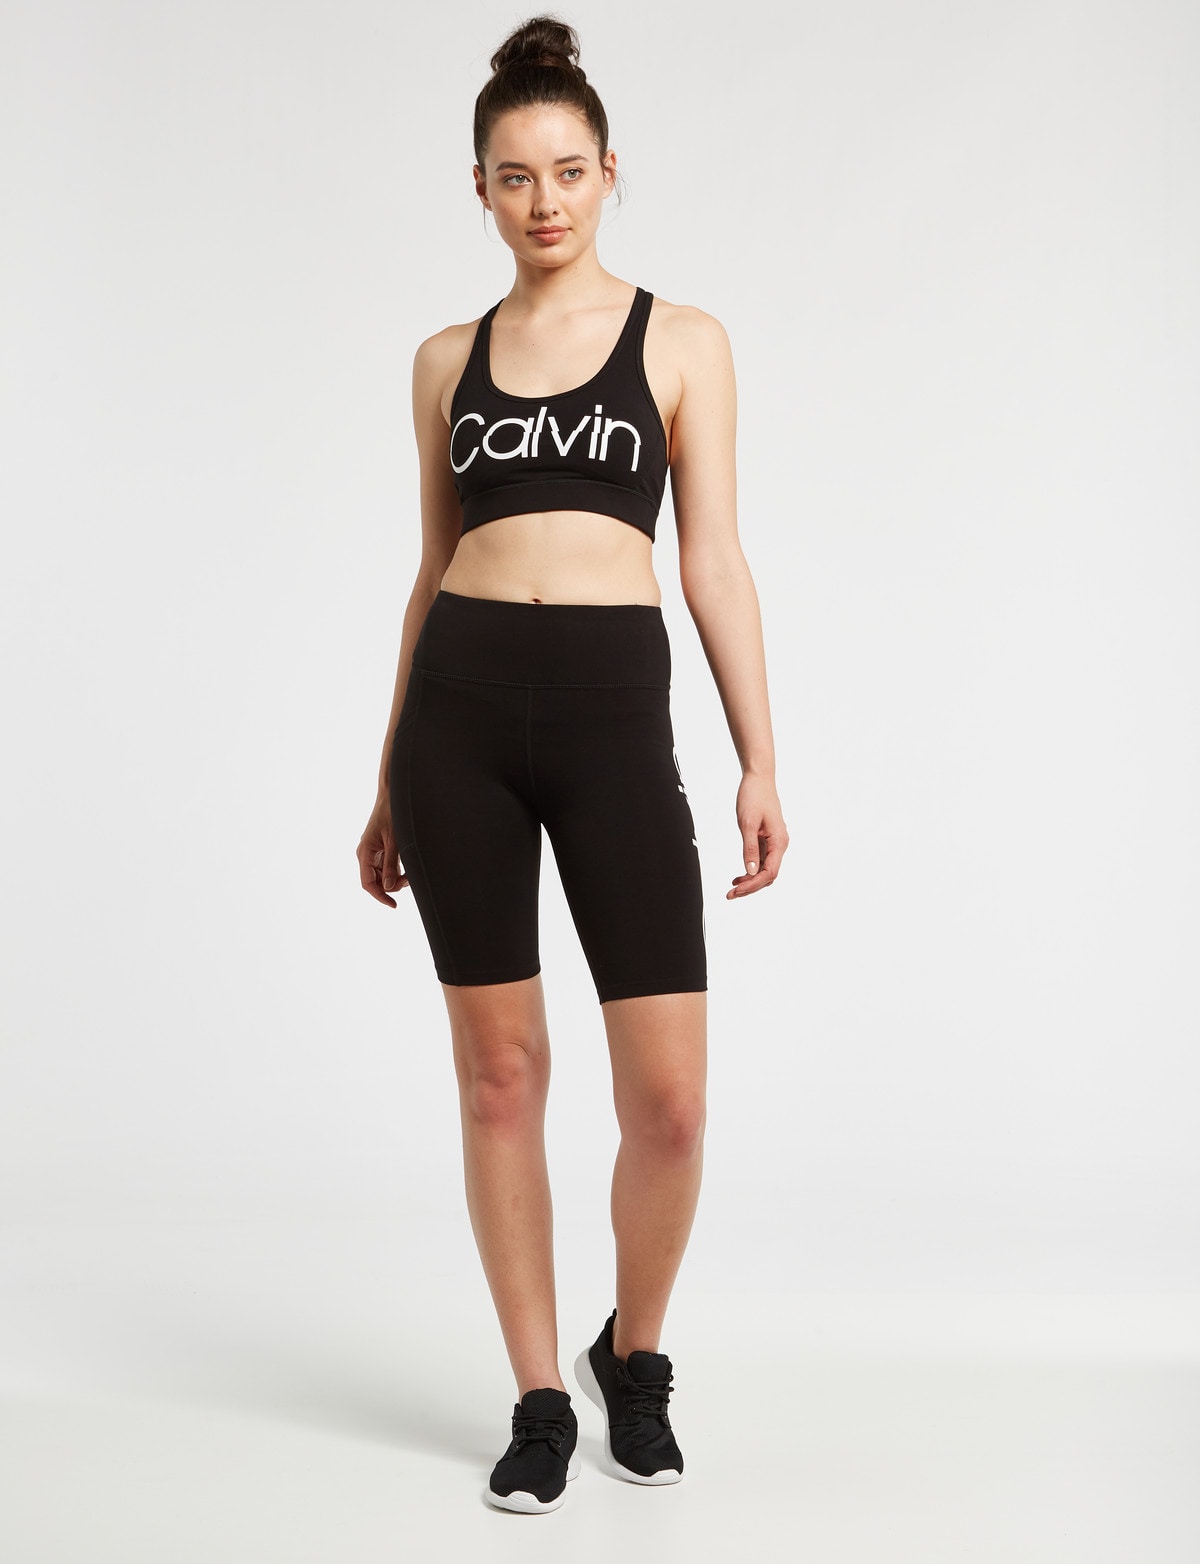 Calvin Klein High Waist Bike Short, Black - Activewear